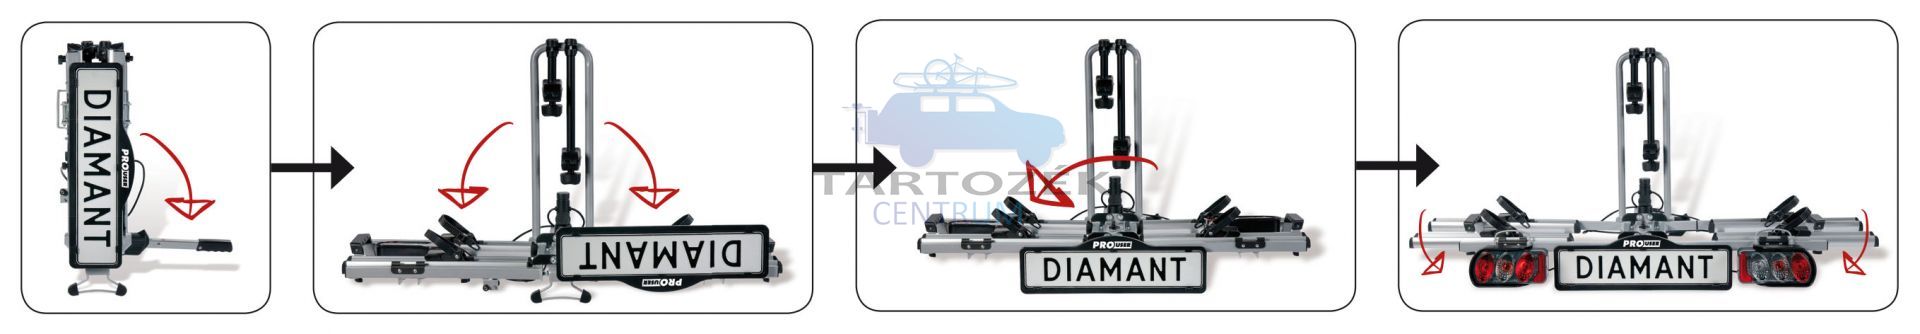 Pro-User Diamant SG2 91734 2-es kerékpártartó vonóhorogra